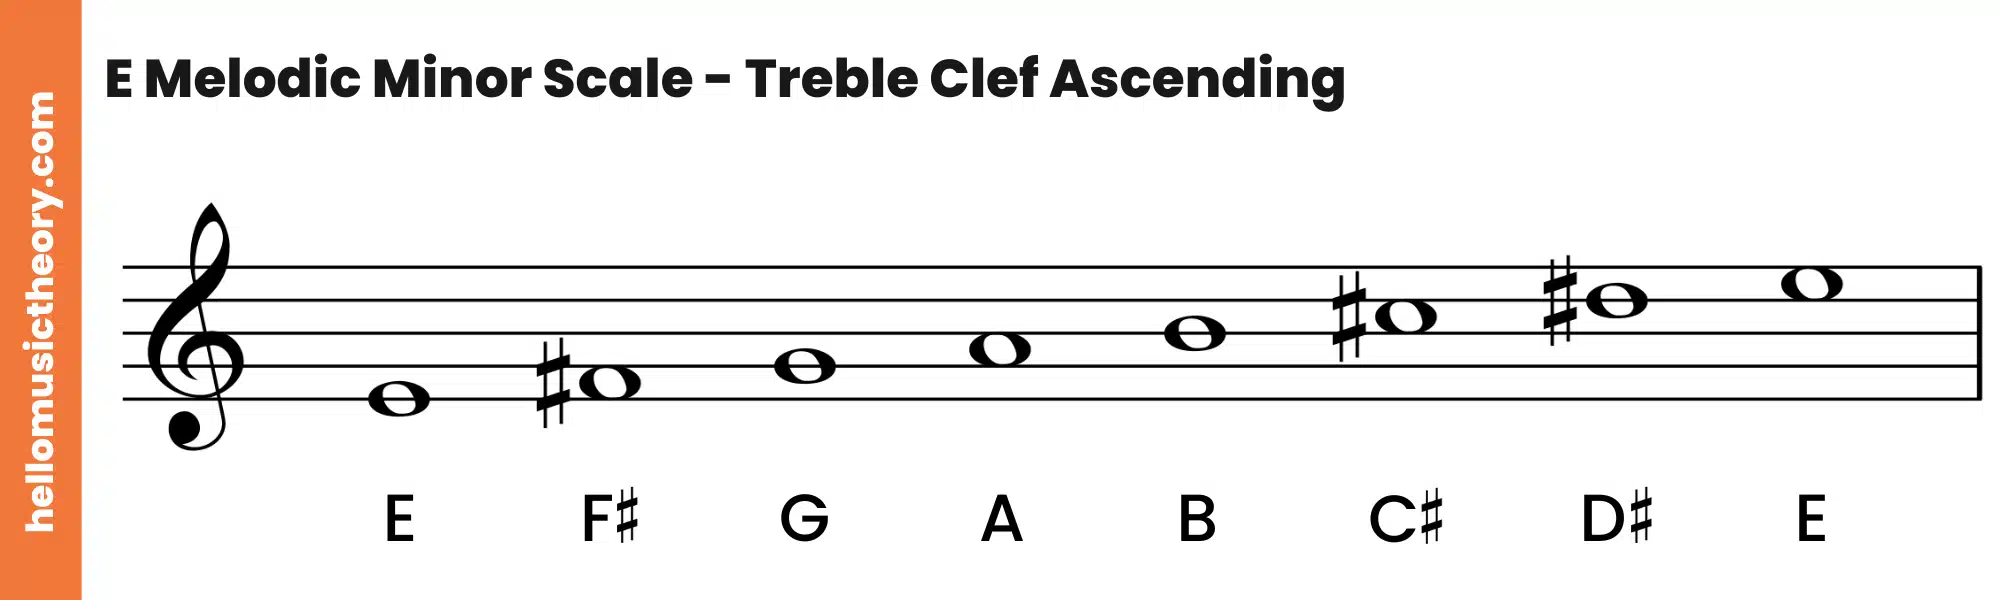 E Melodic Minor Scale Treble Clef Ascending